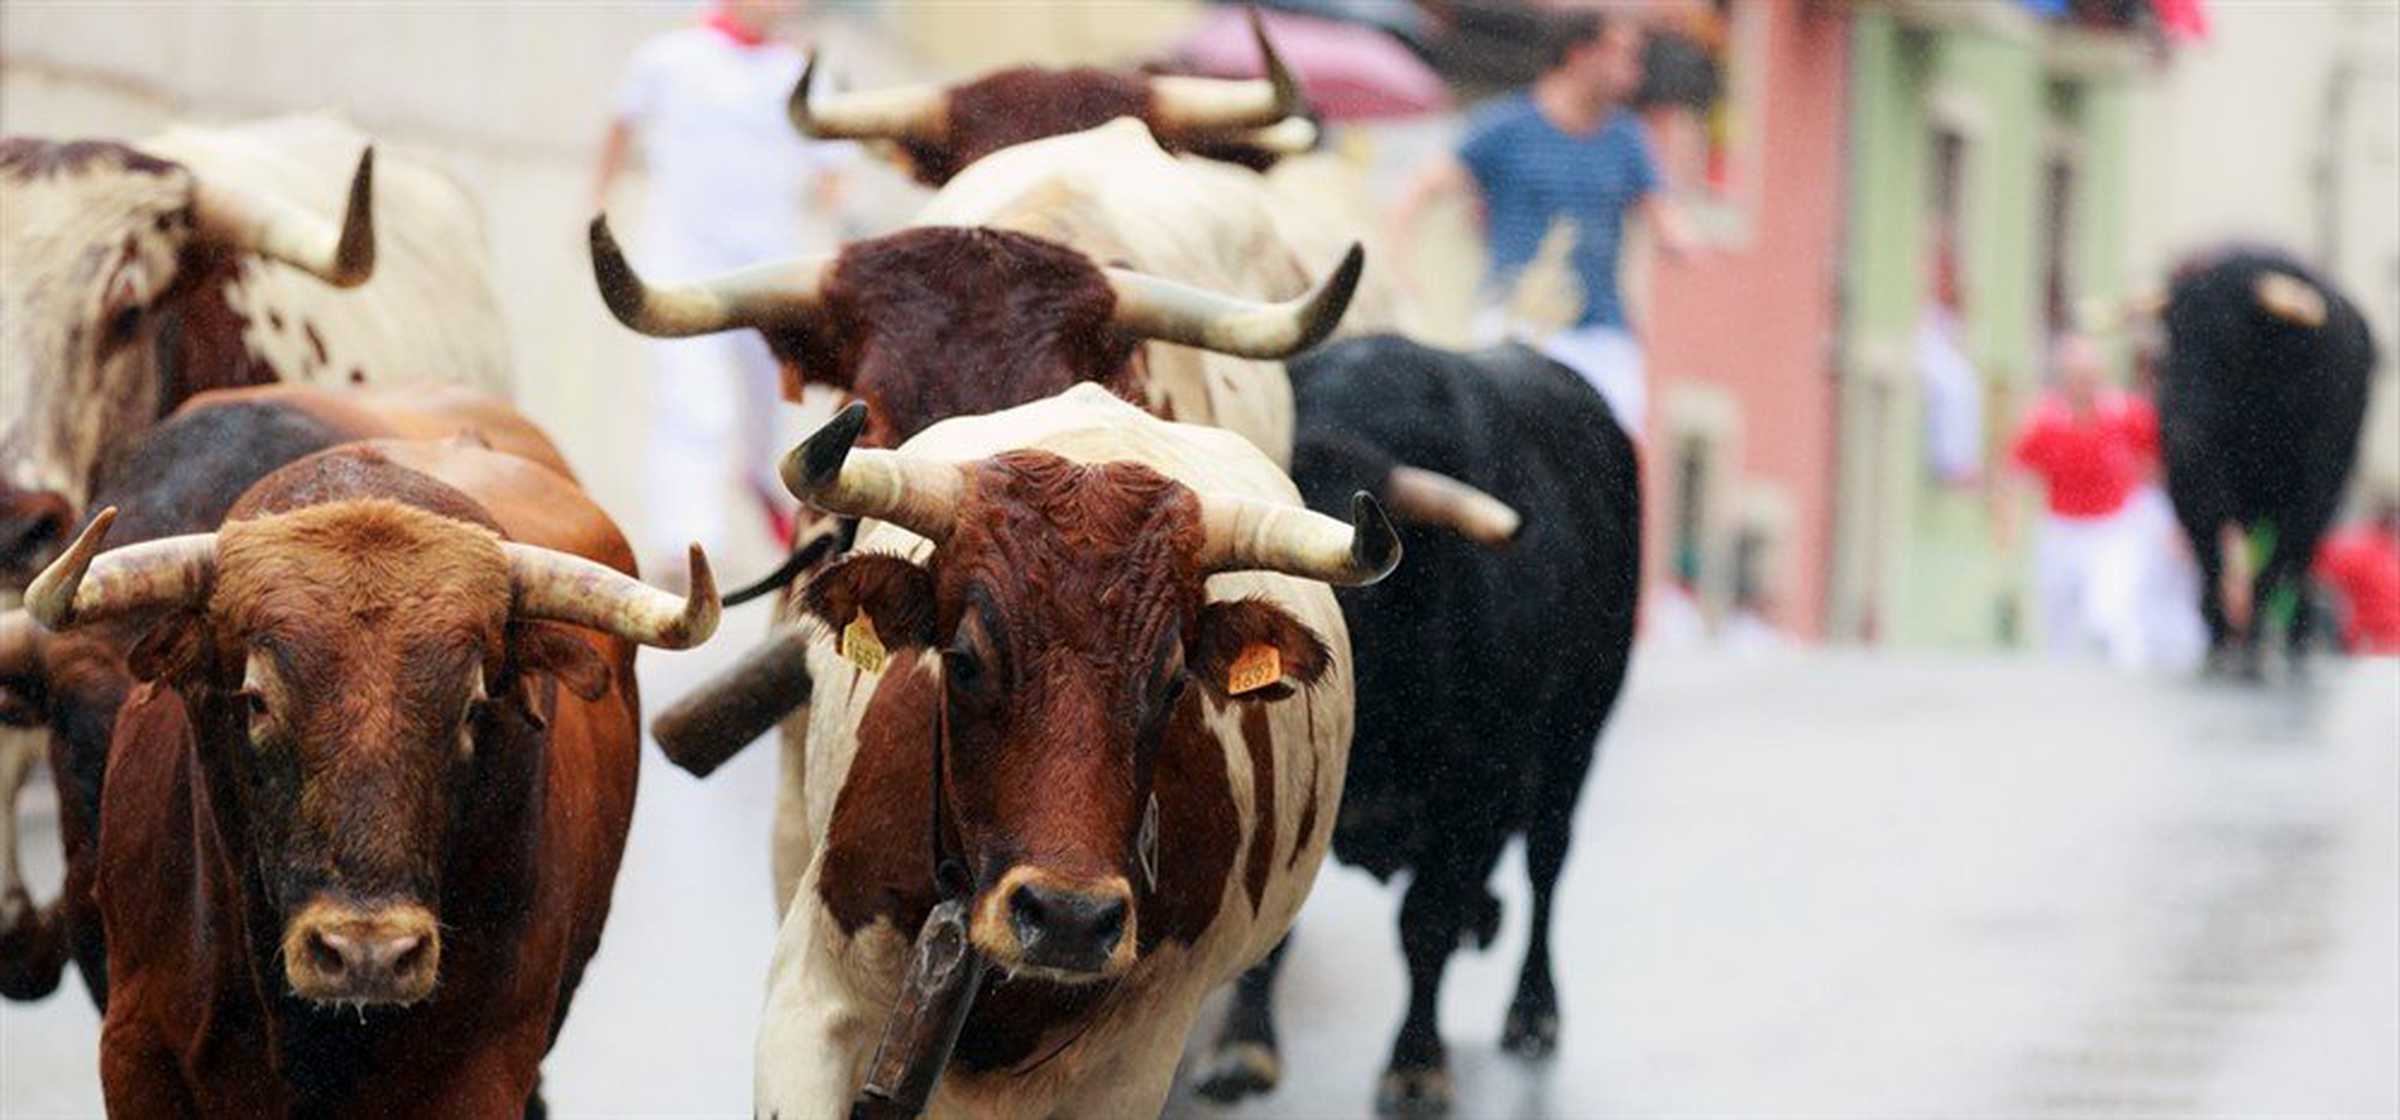 Bullrunning